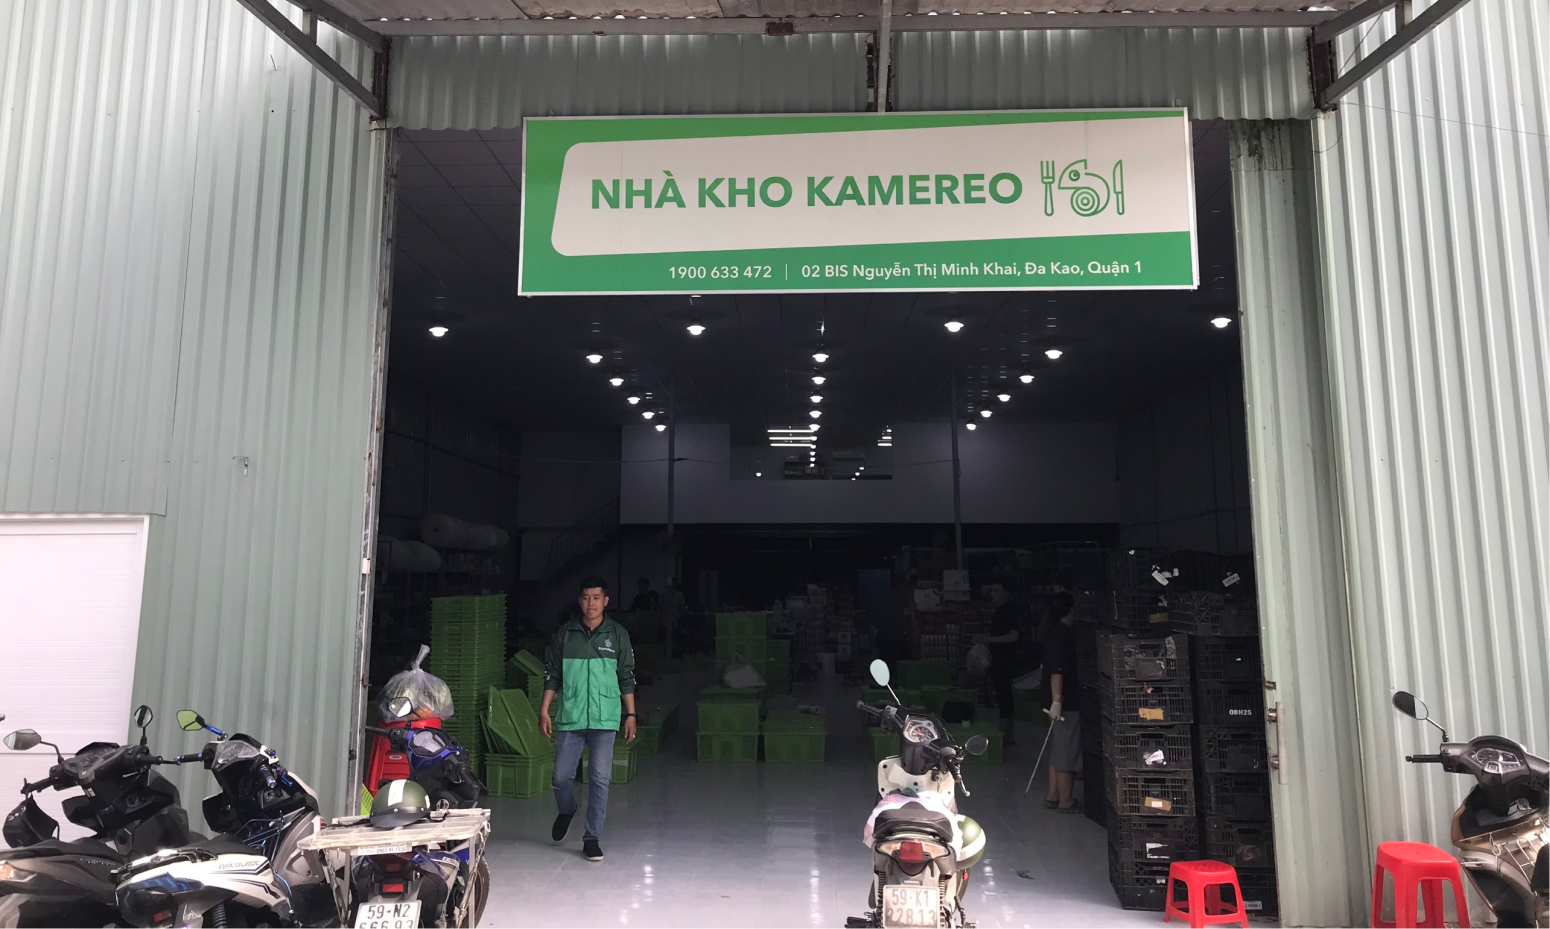 Kamereo krijgt $ 4,6 miljoen om boeren en F&B-bedrijven in Vietnam met elkaar in contact te brengen